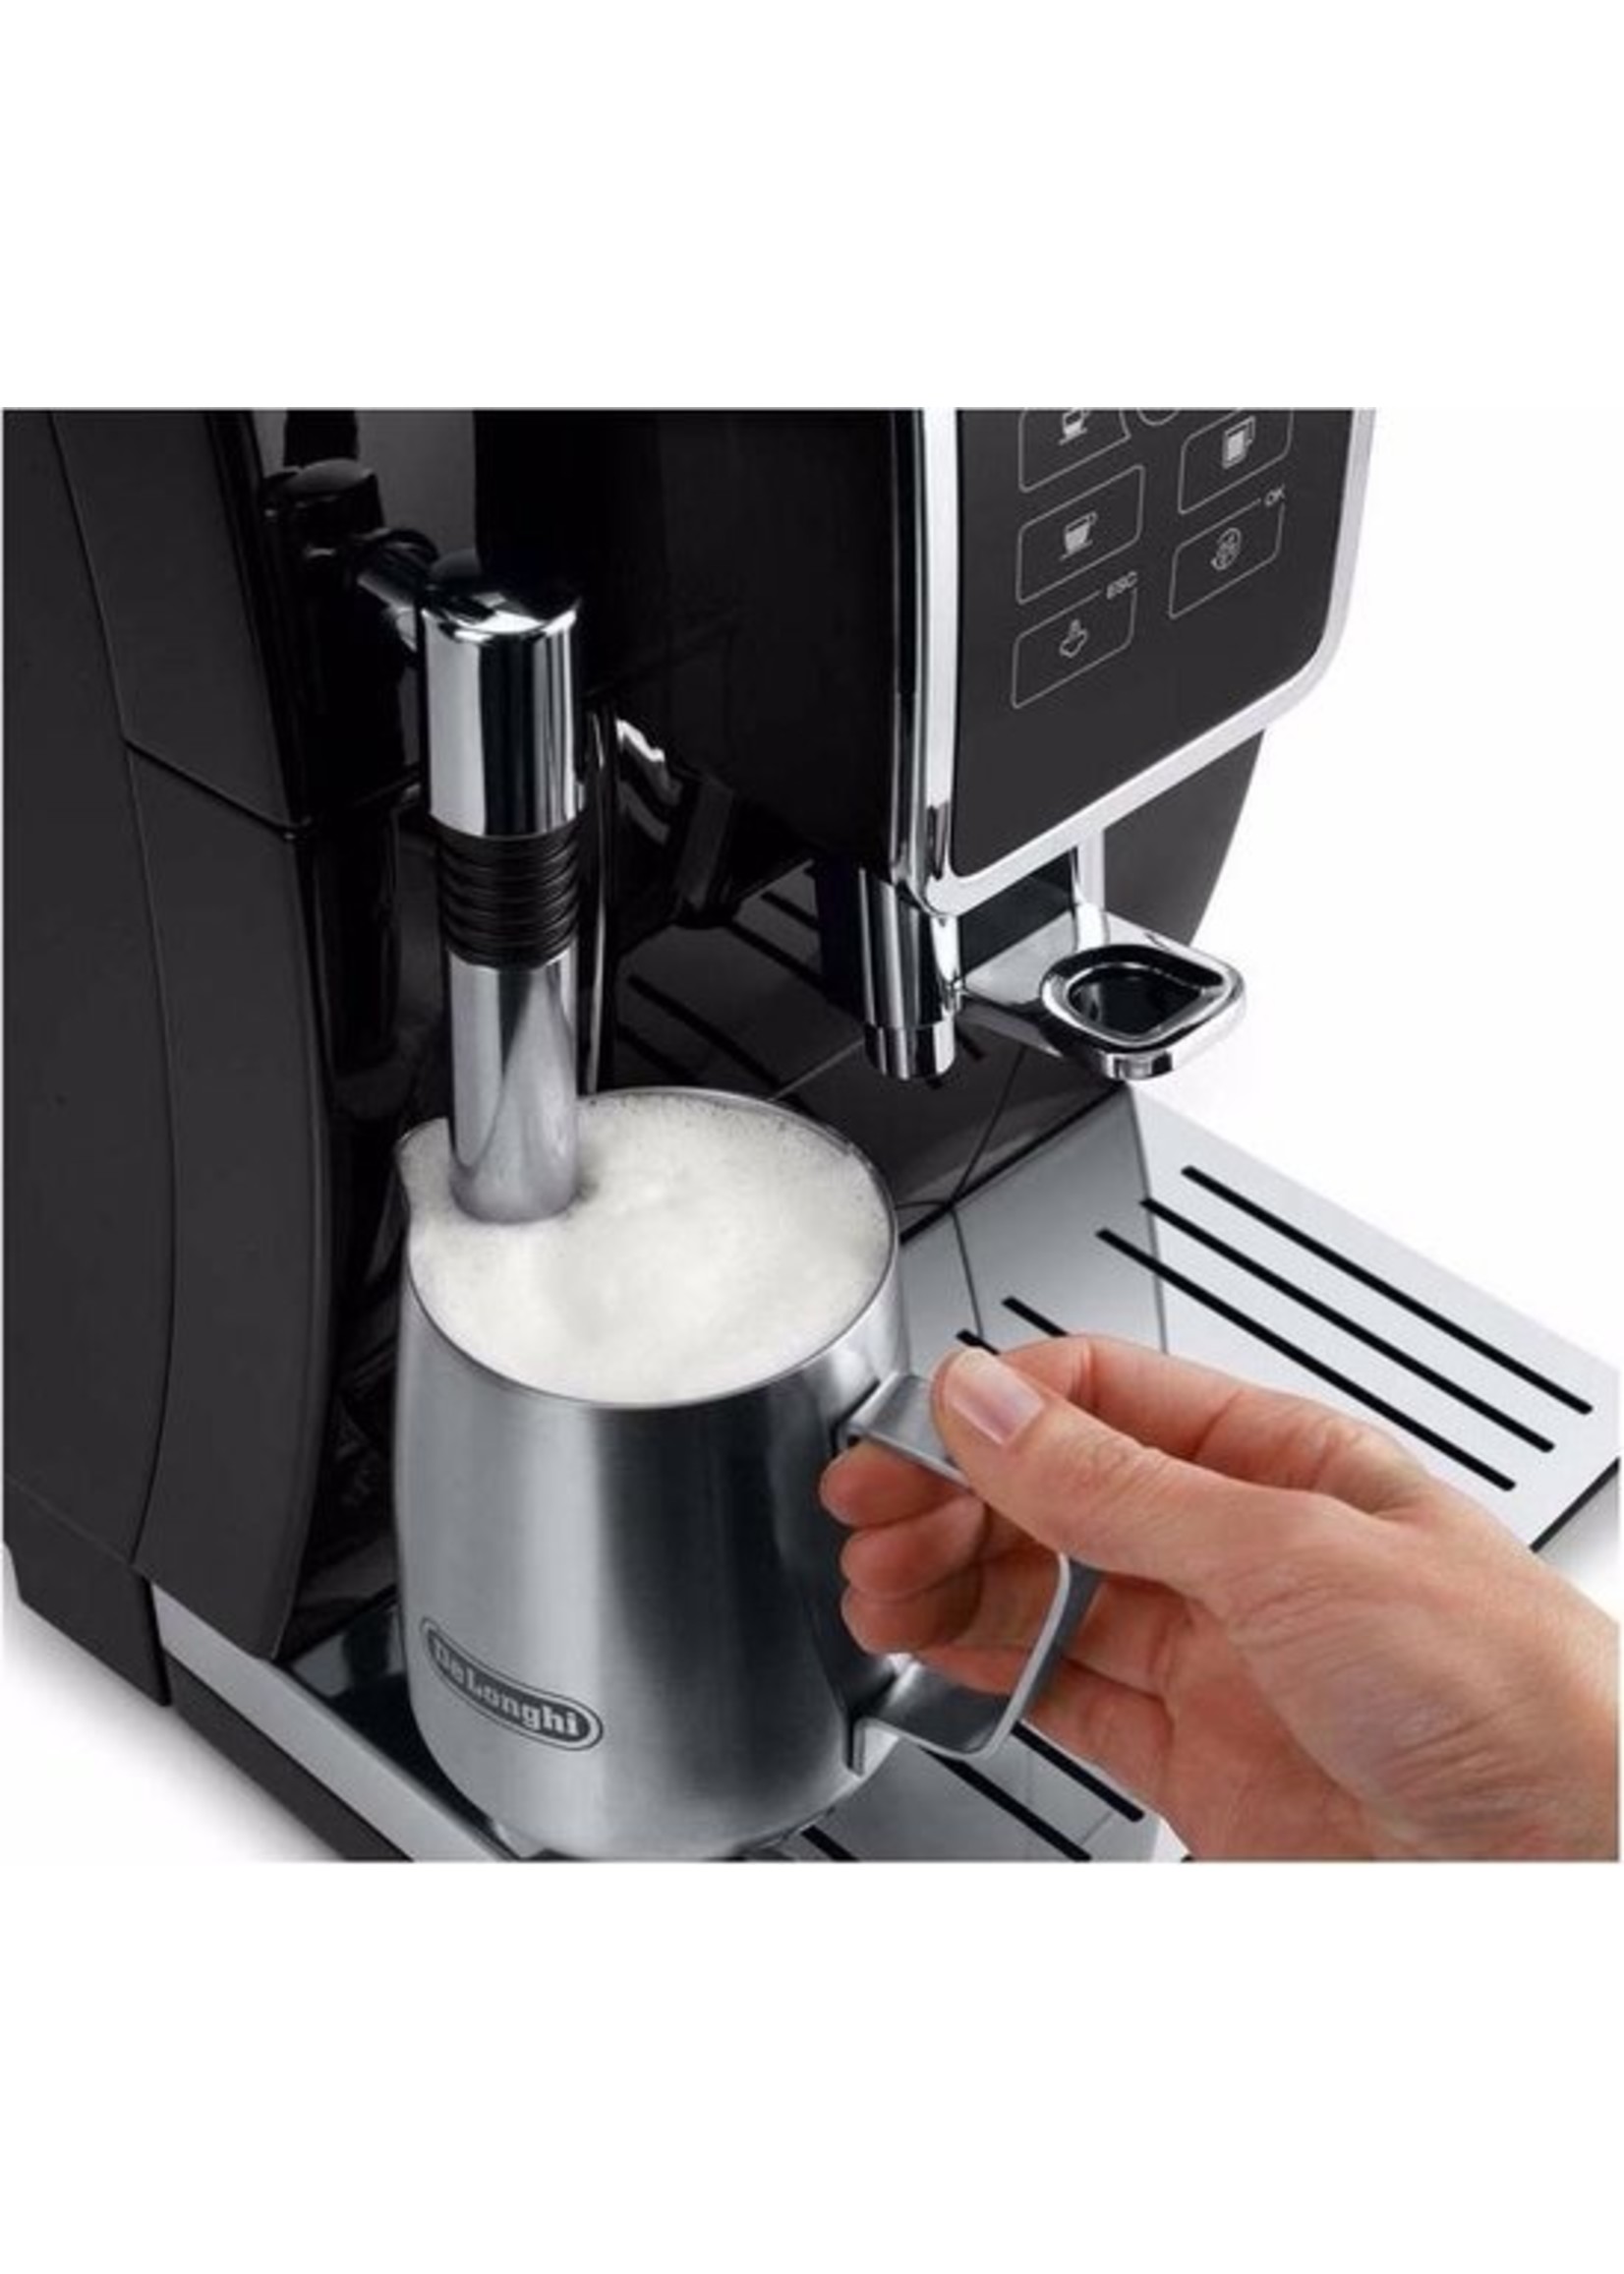 DeLonghi DeLonghi Dinamica ECAM 350.15.B - Volautomatische espressomachine - Zwart koopjeshoek